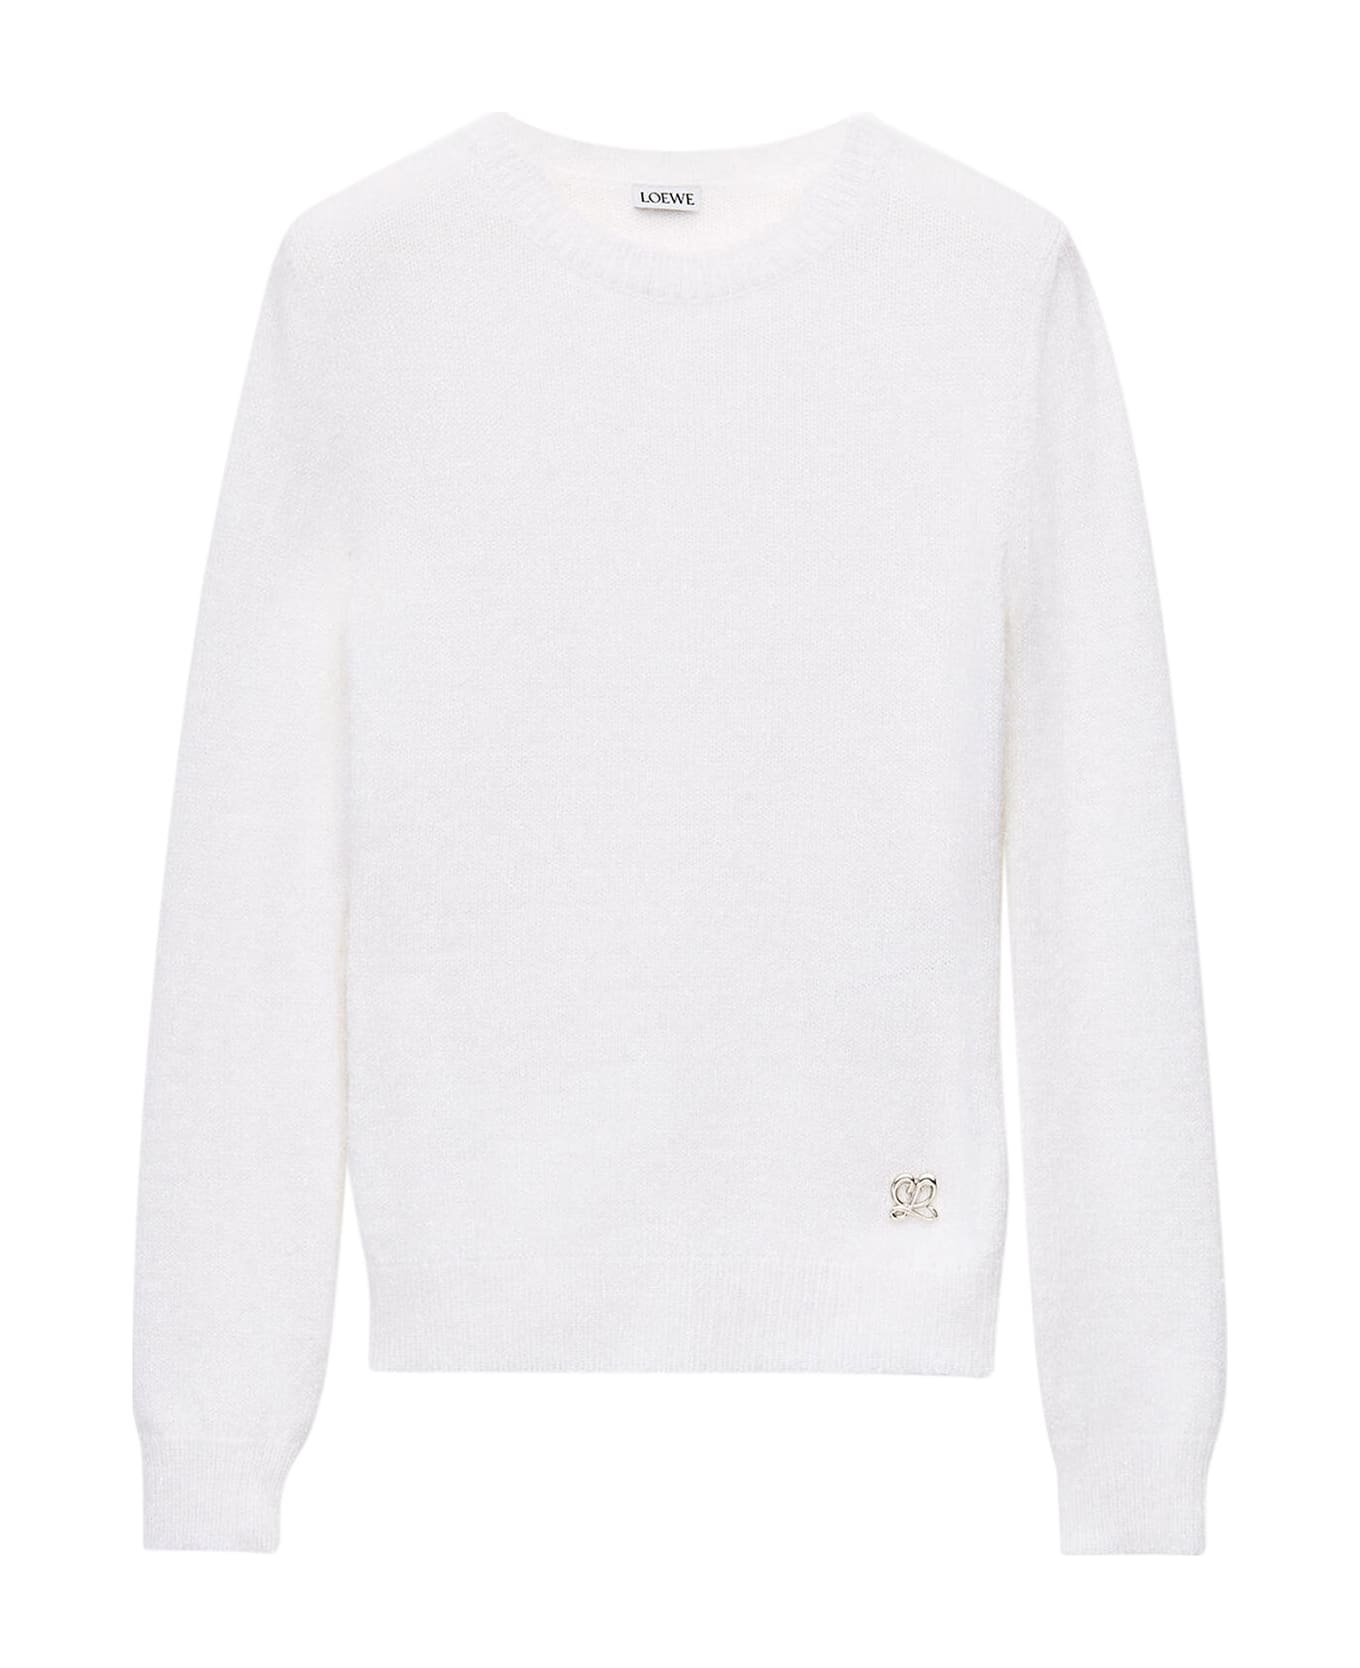 Loewe Sweater - OPTIC WHITE